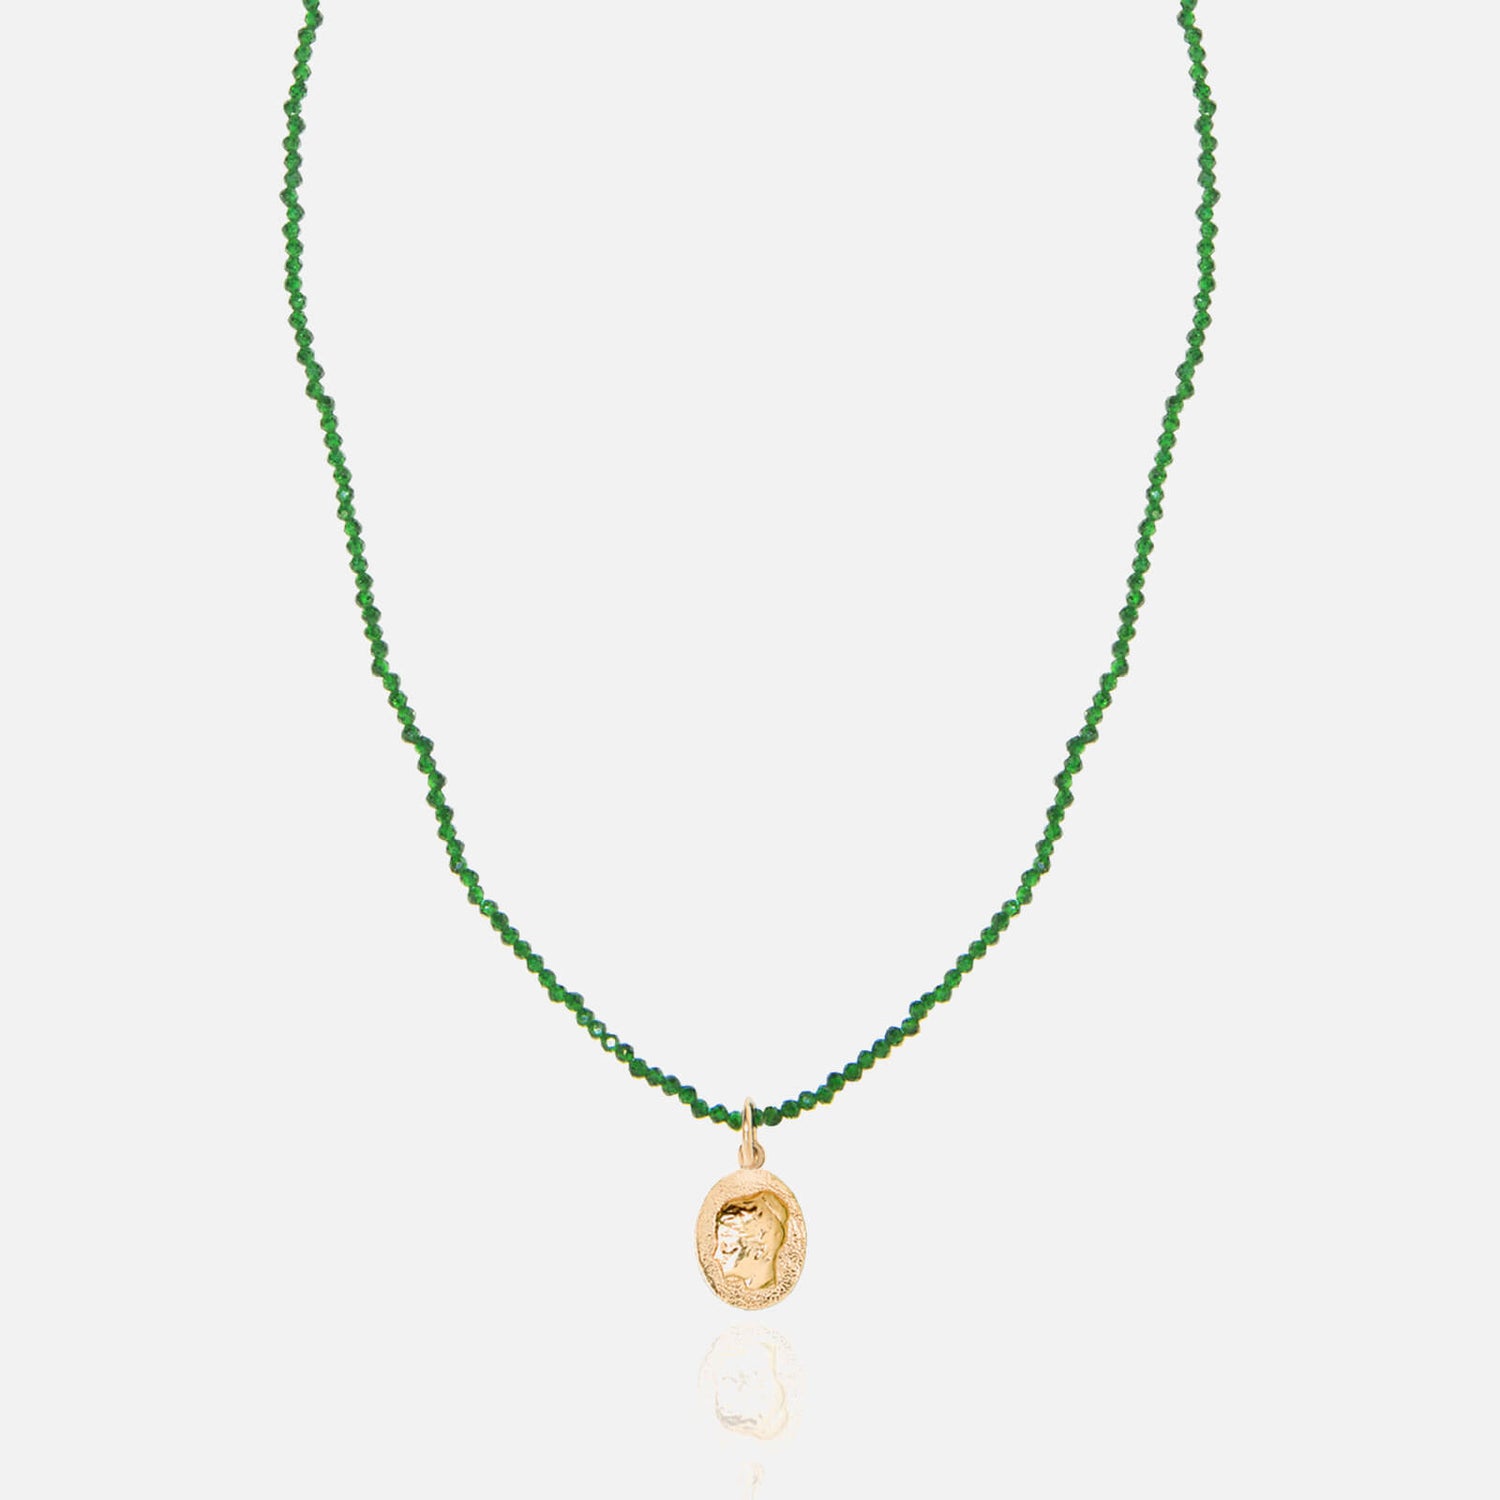 Hermina Athens Women's Ygeia Necklace - Emerald